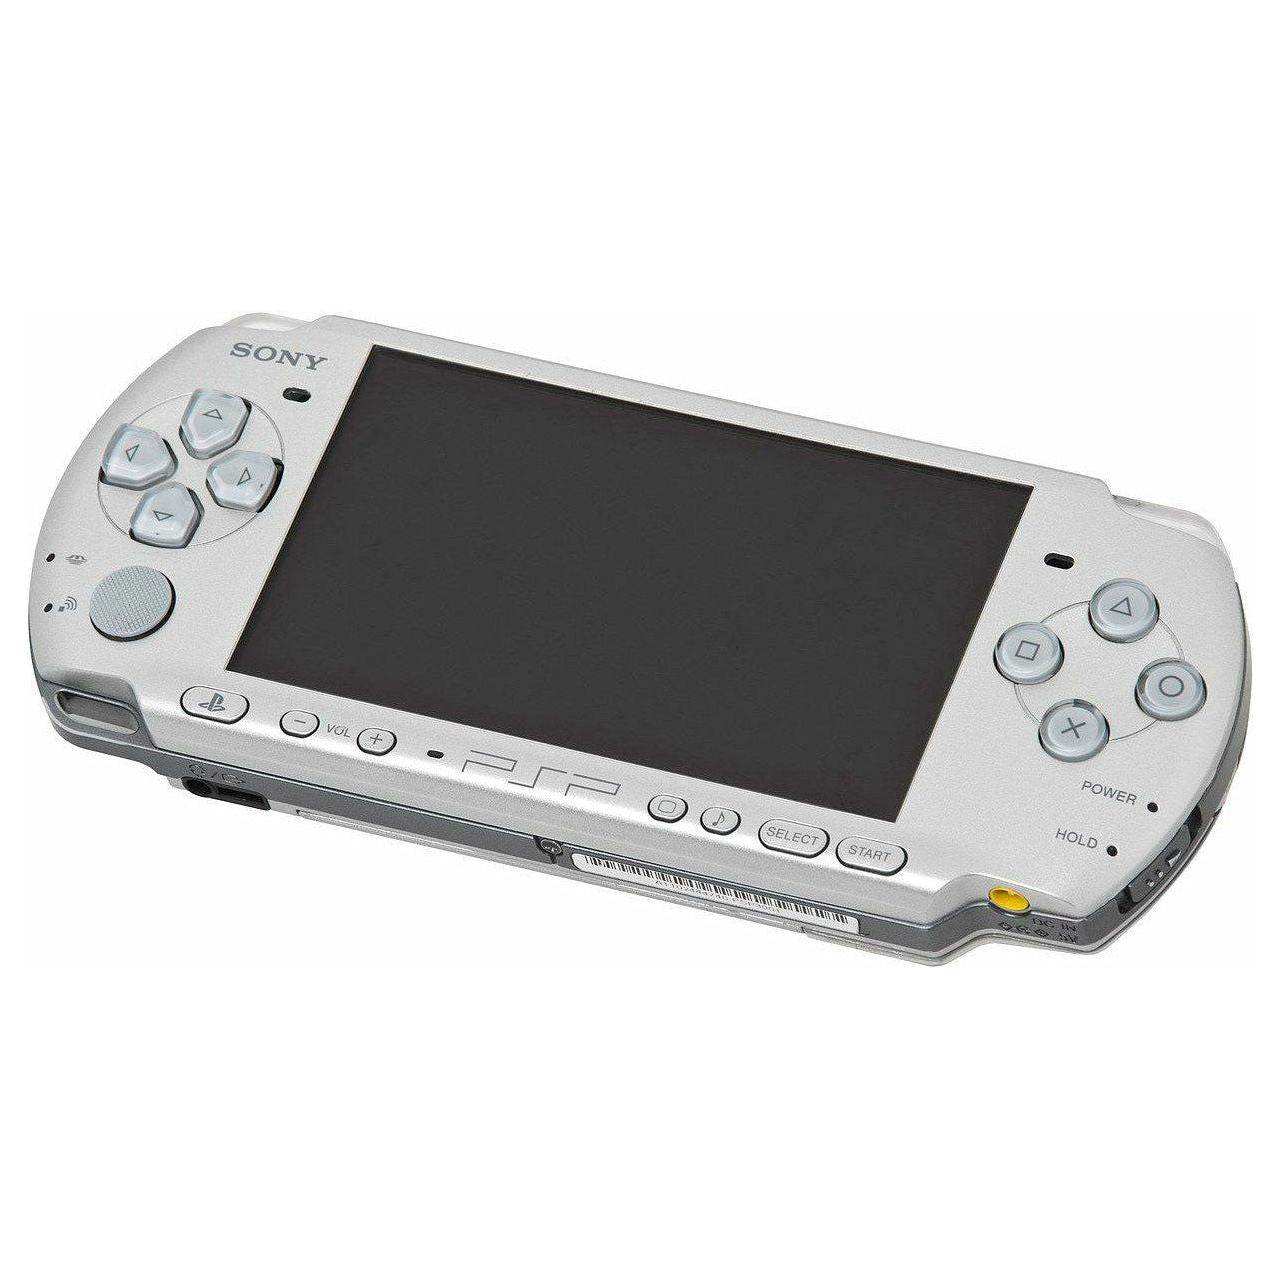 PSP System - Model 2000 (White)